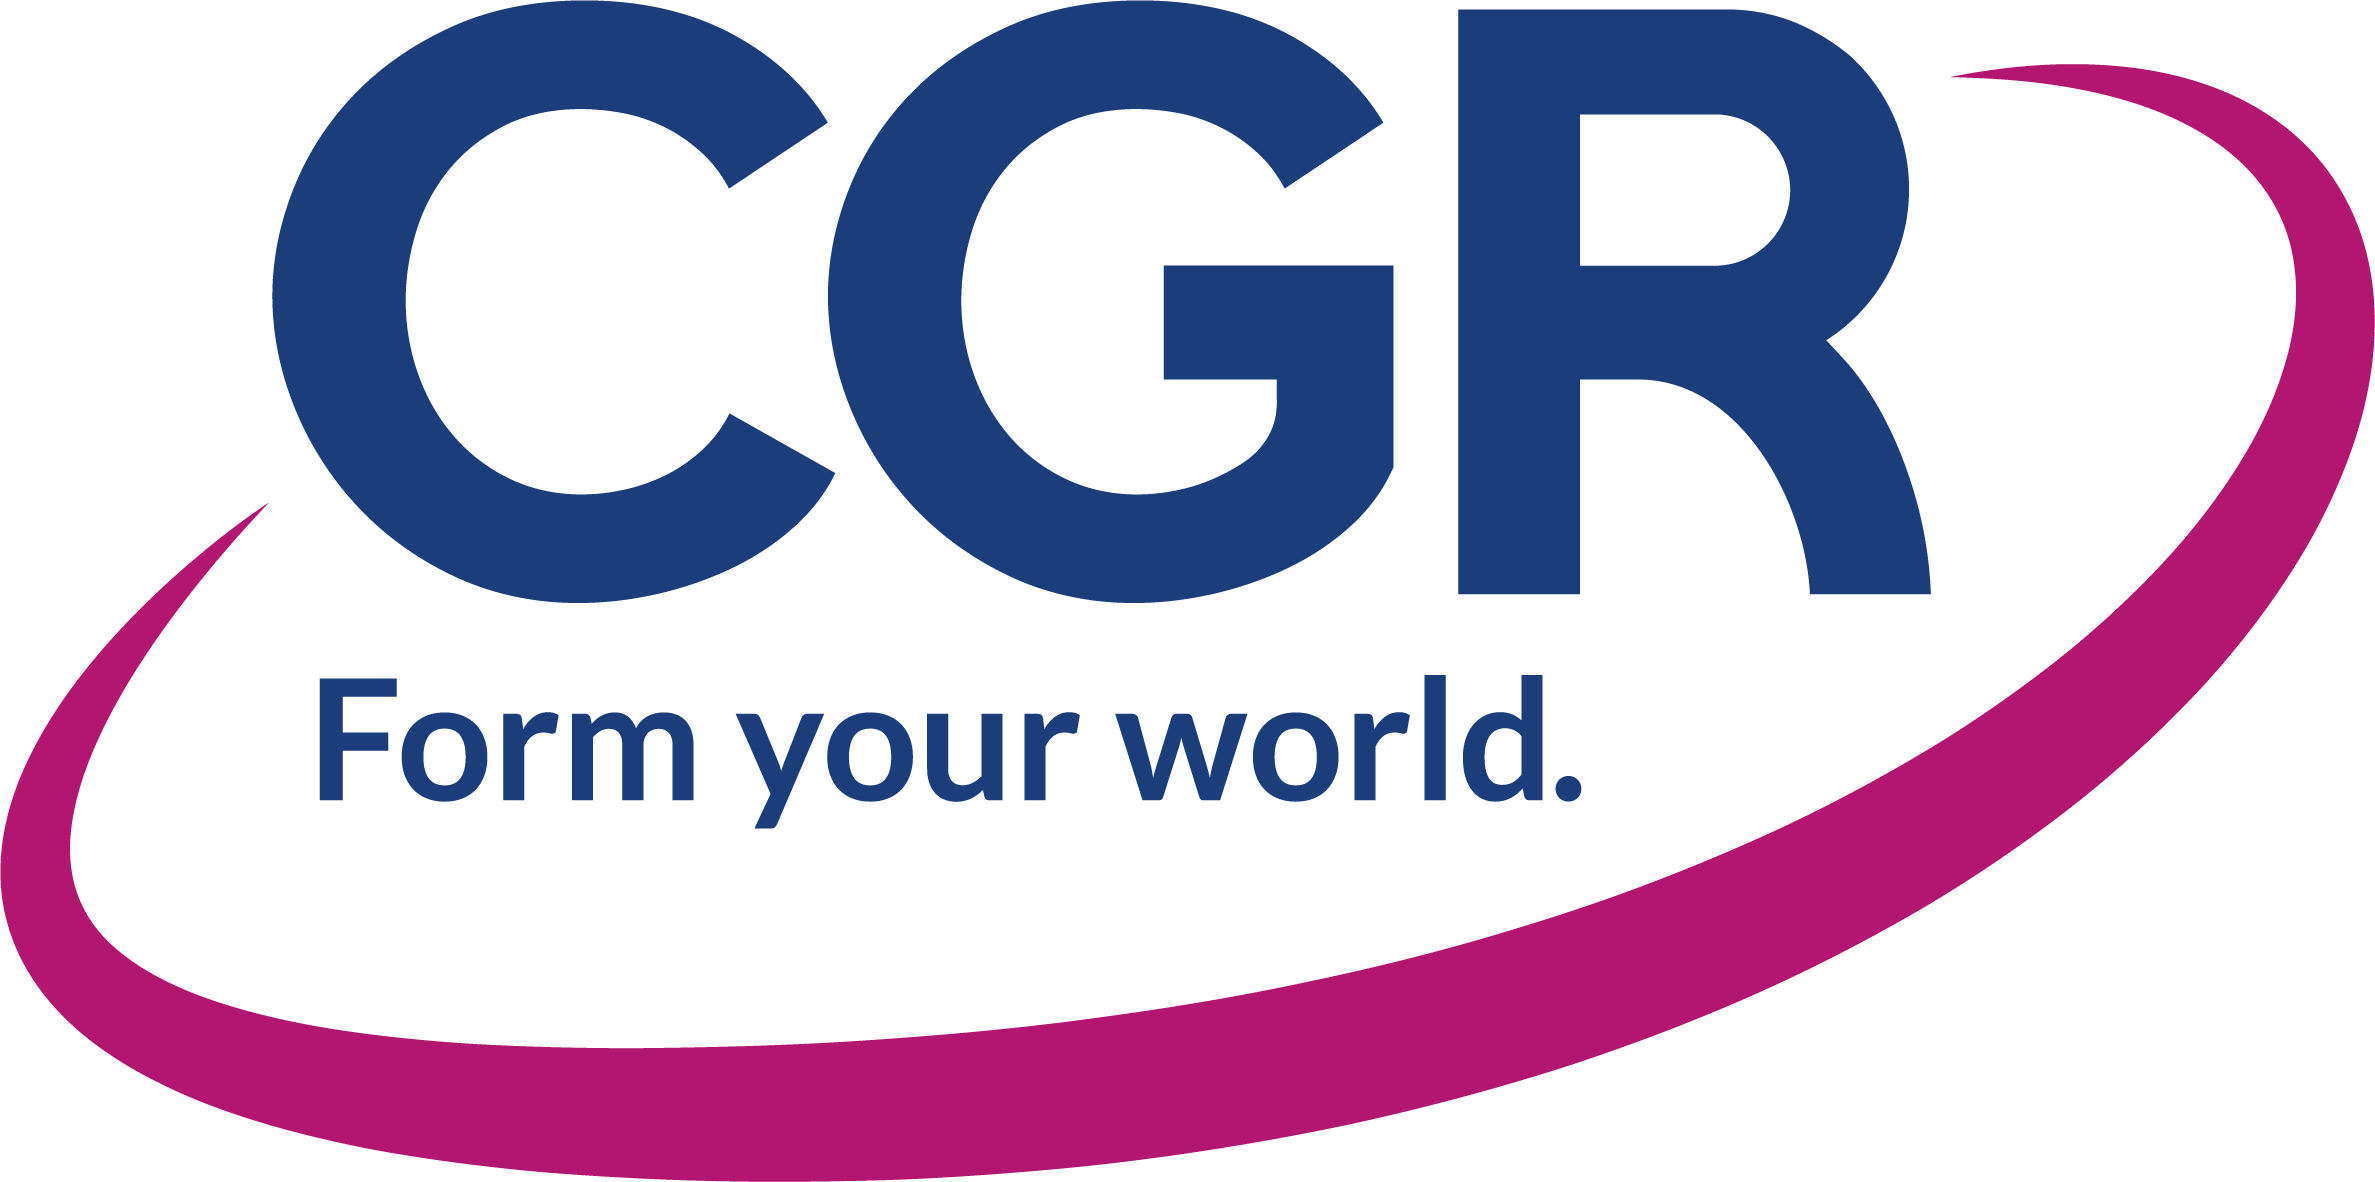 Logo for cg visions | Logo design contest | 99designs